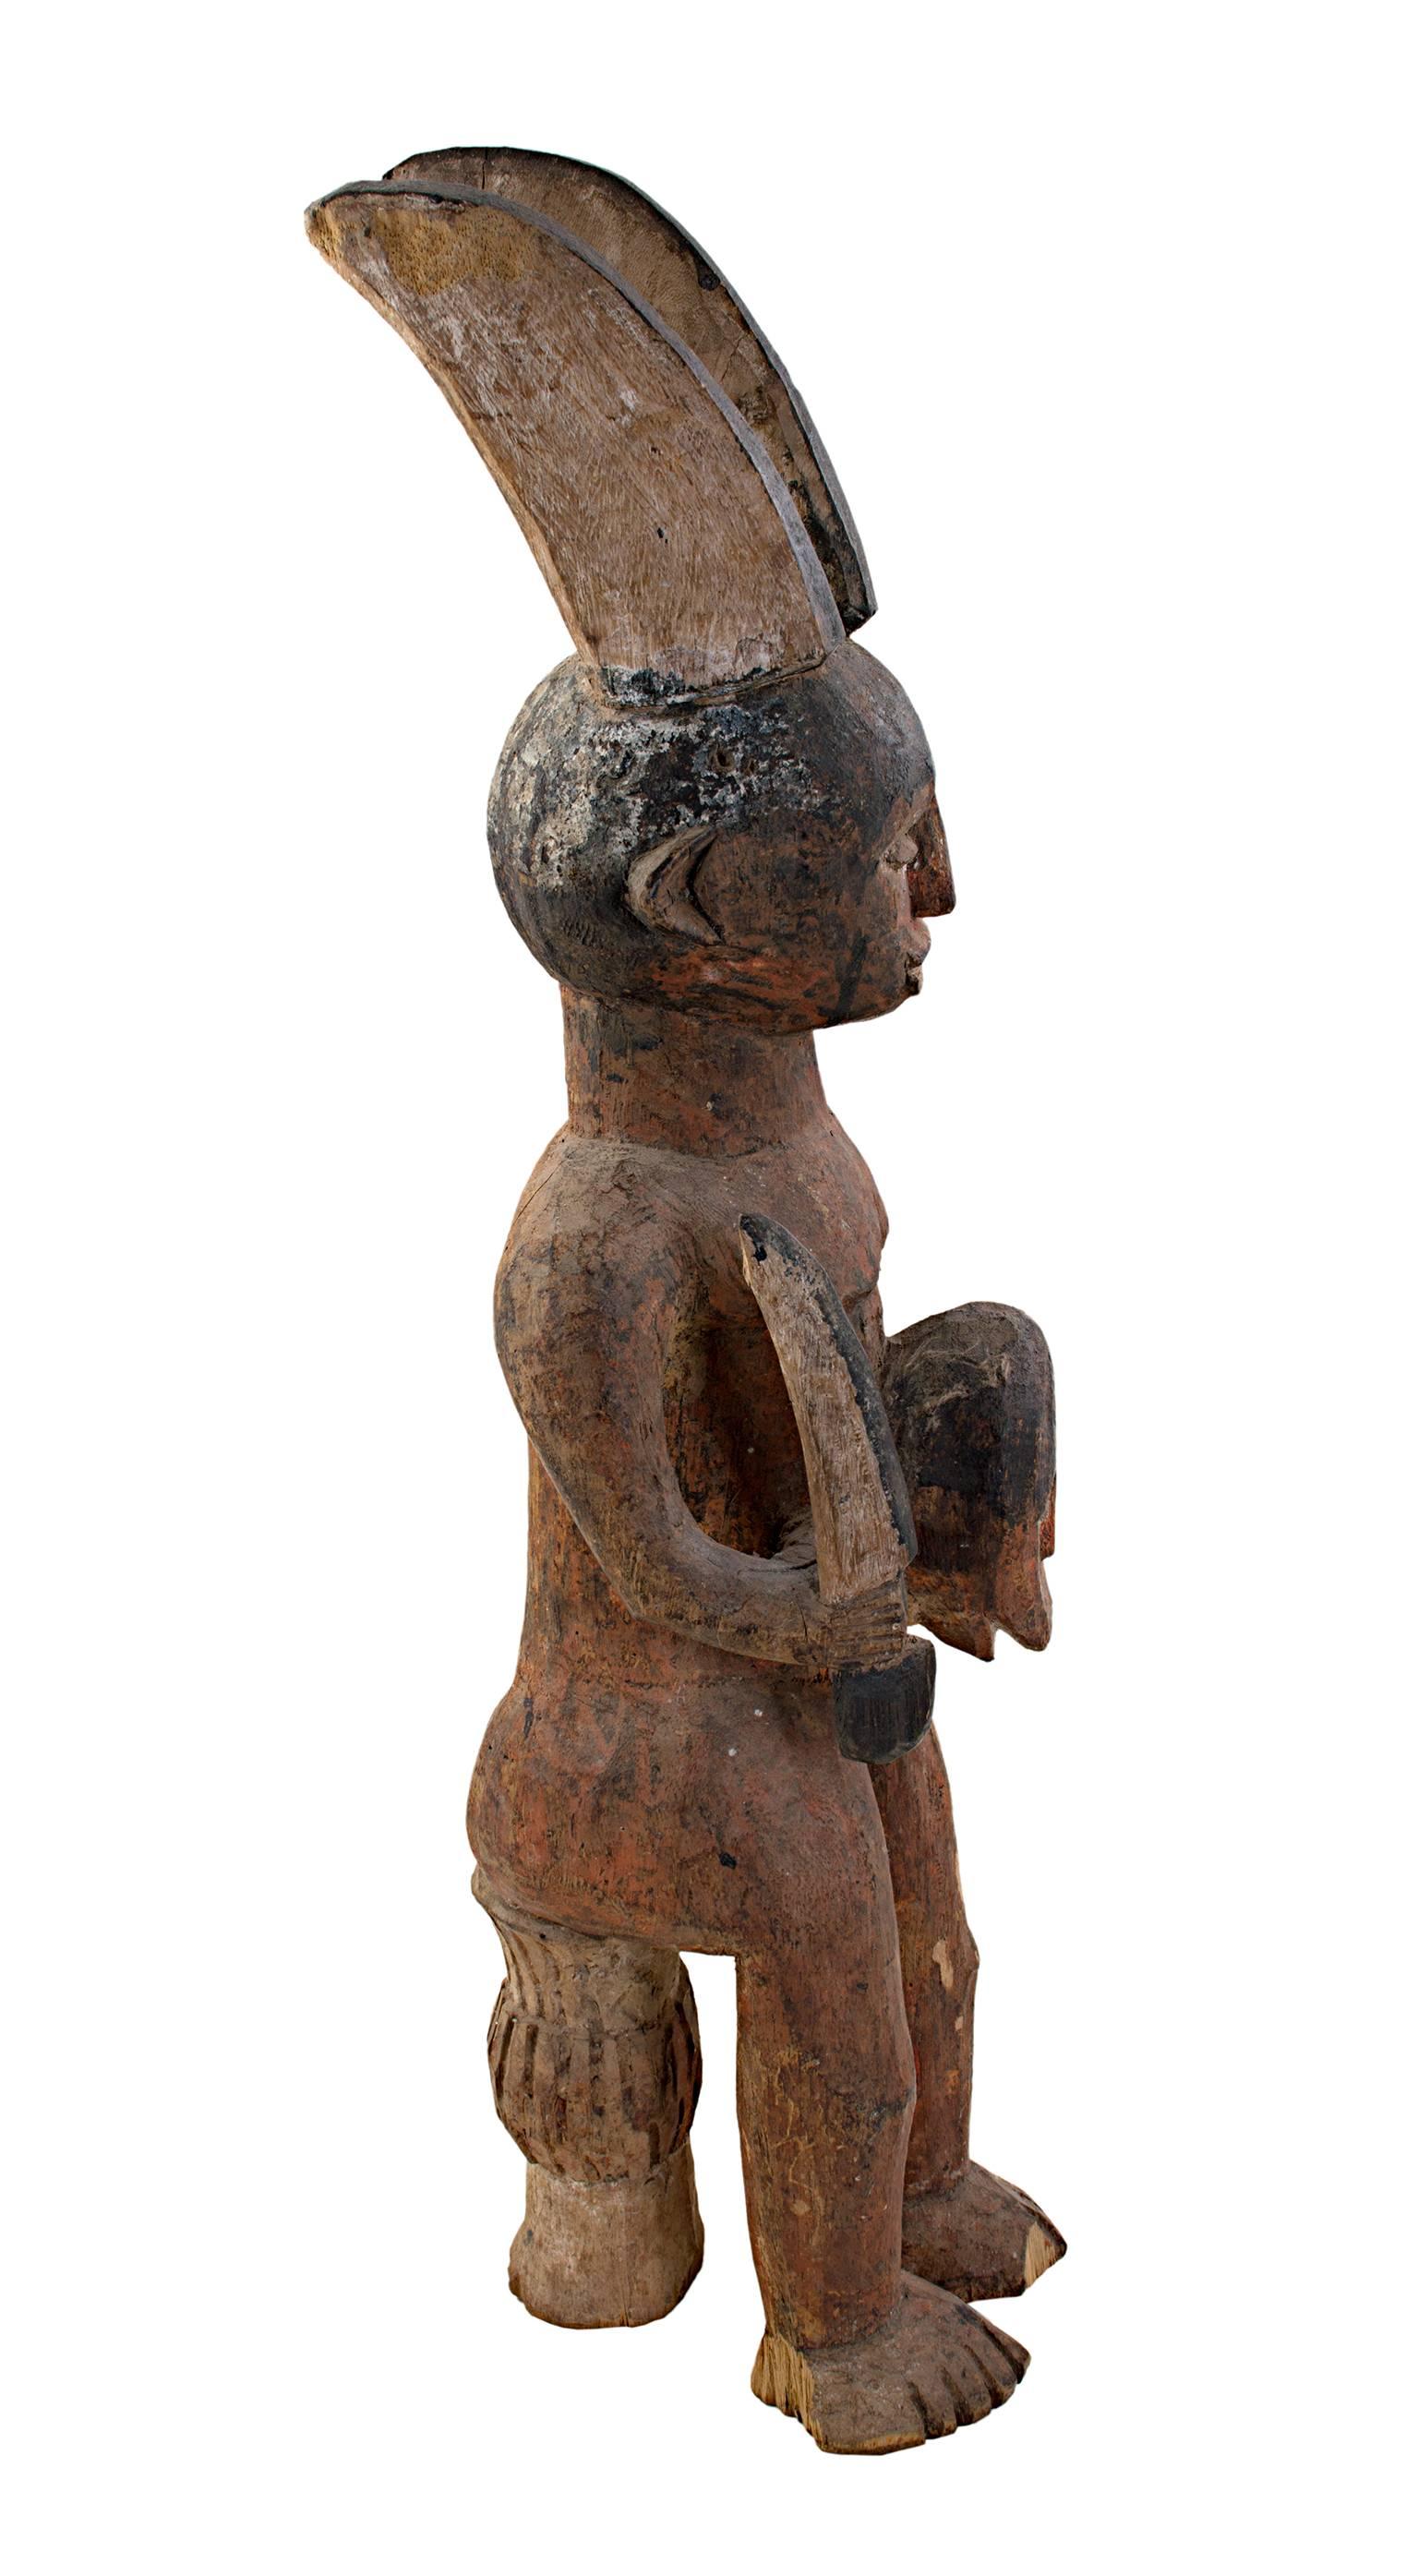 Cette sculpture fétiche Ekamka a été sculptée dans du bois par un artiste nigérian inconnu. Elle représente un personnage tenant un masque. Le personnage a deux cornes symboliques qui dépassent de sa tête et il est assis sur un mince